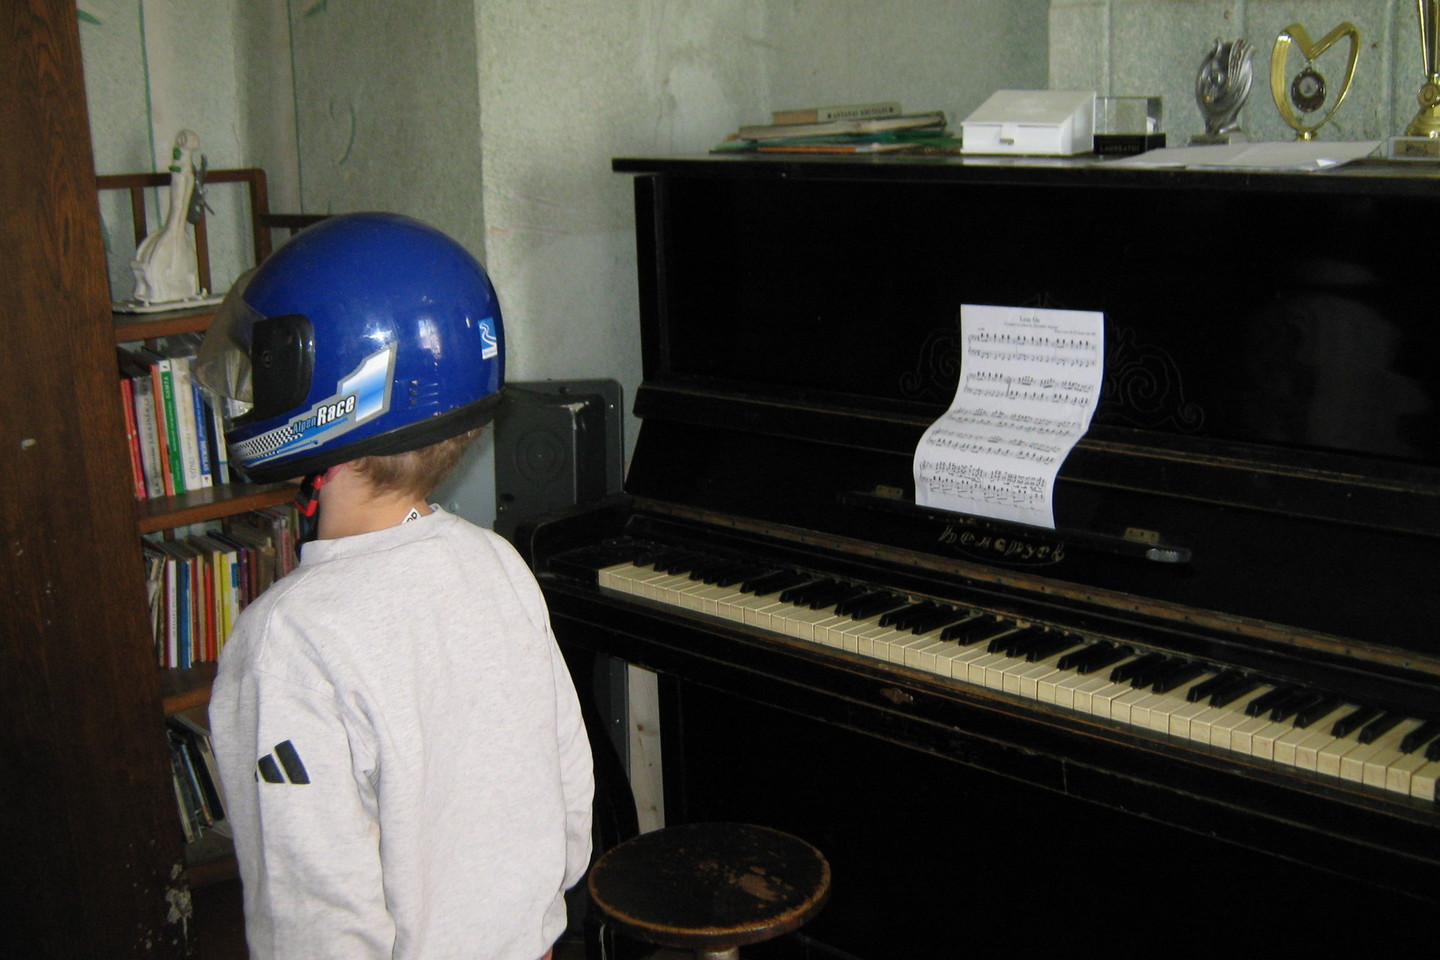 Lukšių namuose keliasdešimties metų senumo pianinu skambina muzikai gabios dukros. Mažiausias – septynmetis – gausioss šeimos narys atvykusiems žurnalistams pademonstravo savo šalmą.<br>L.Juodzevičienės nuotr.